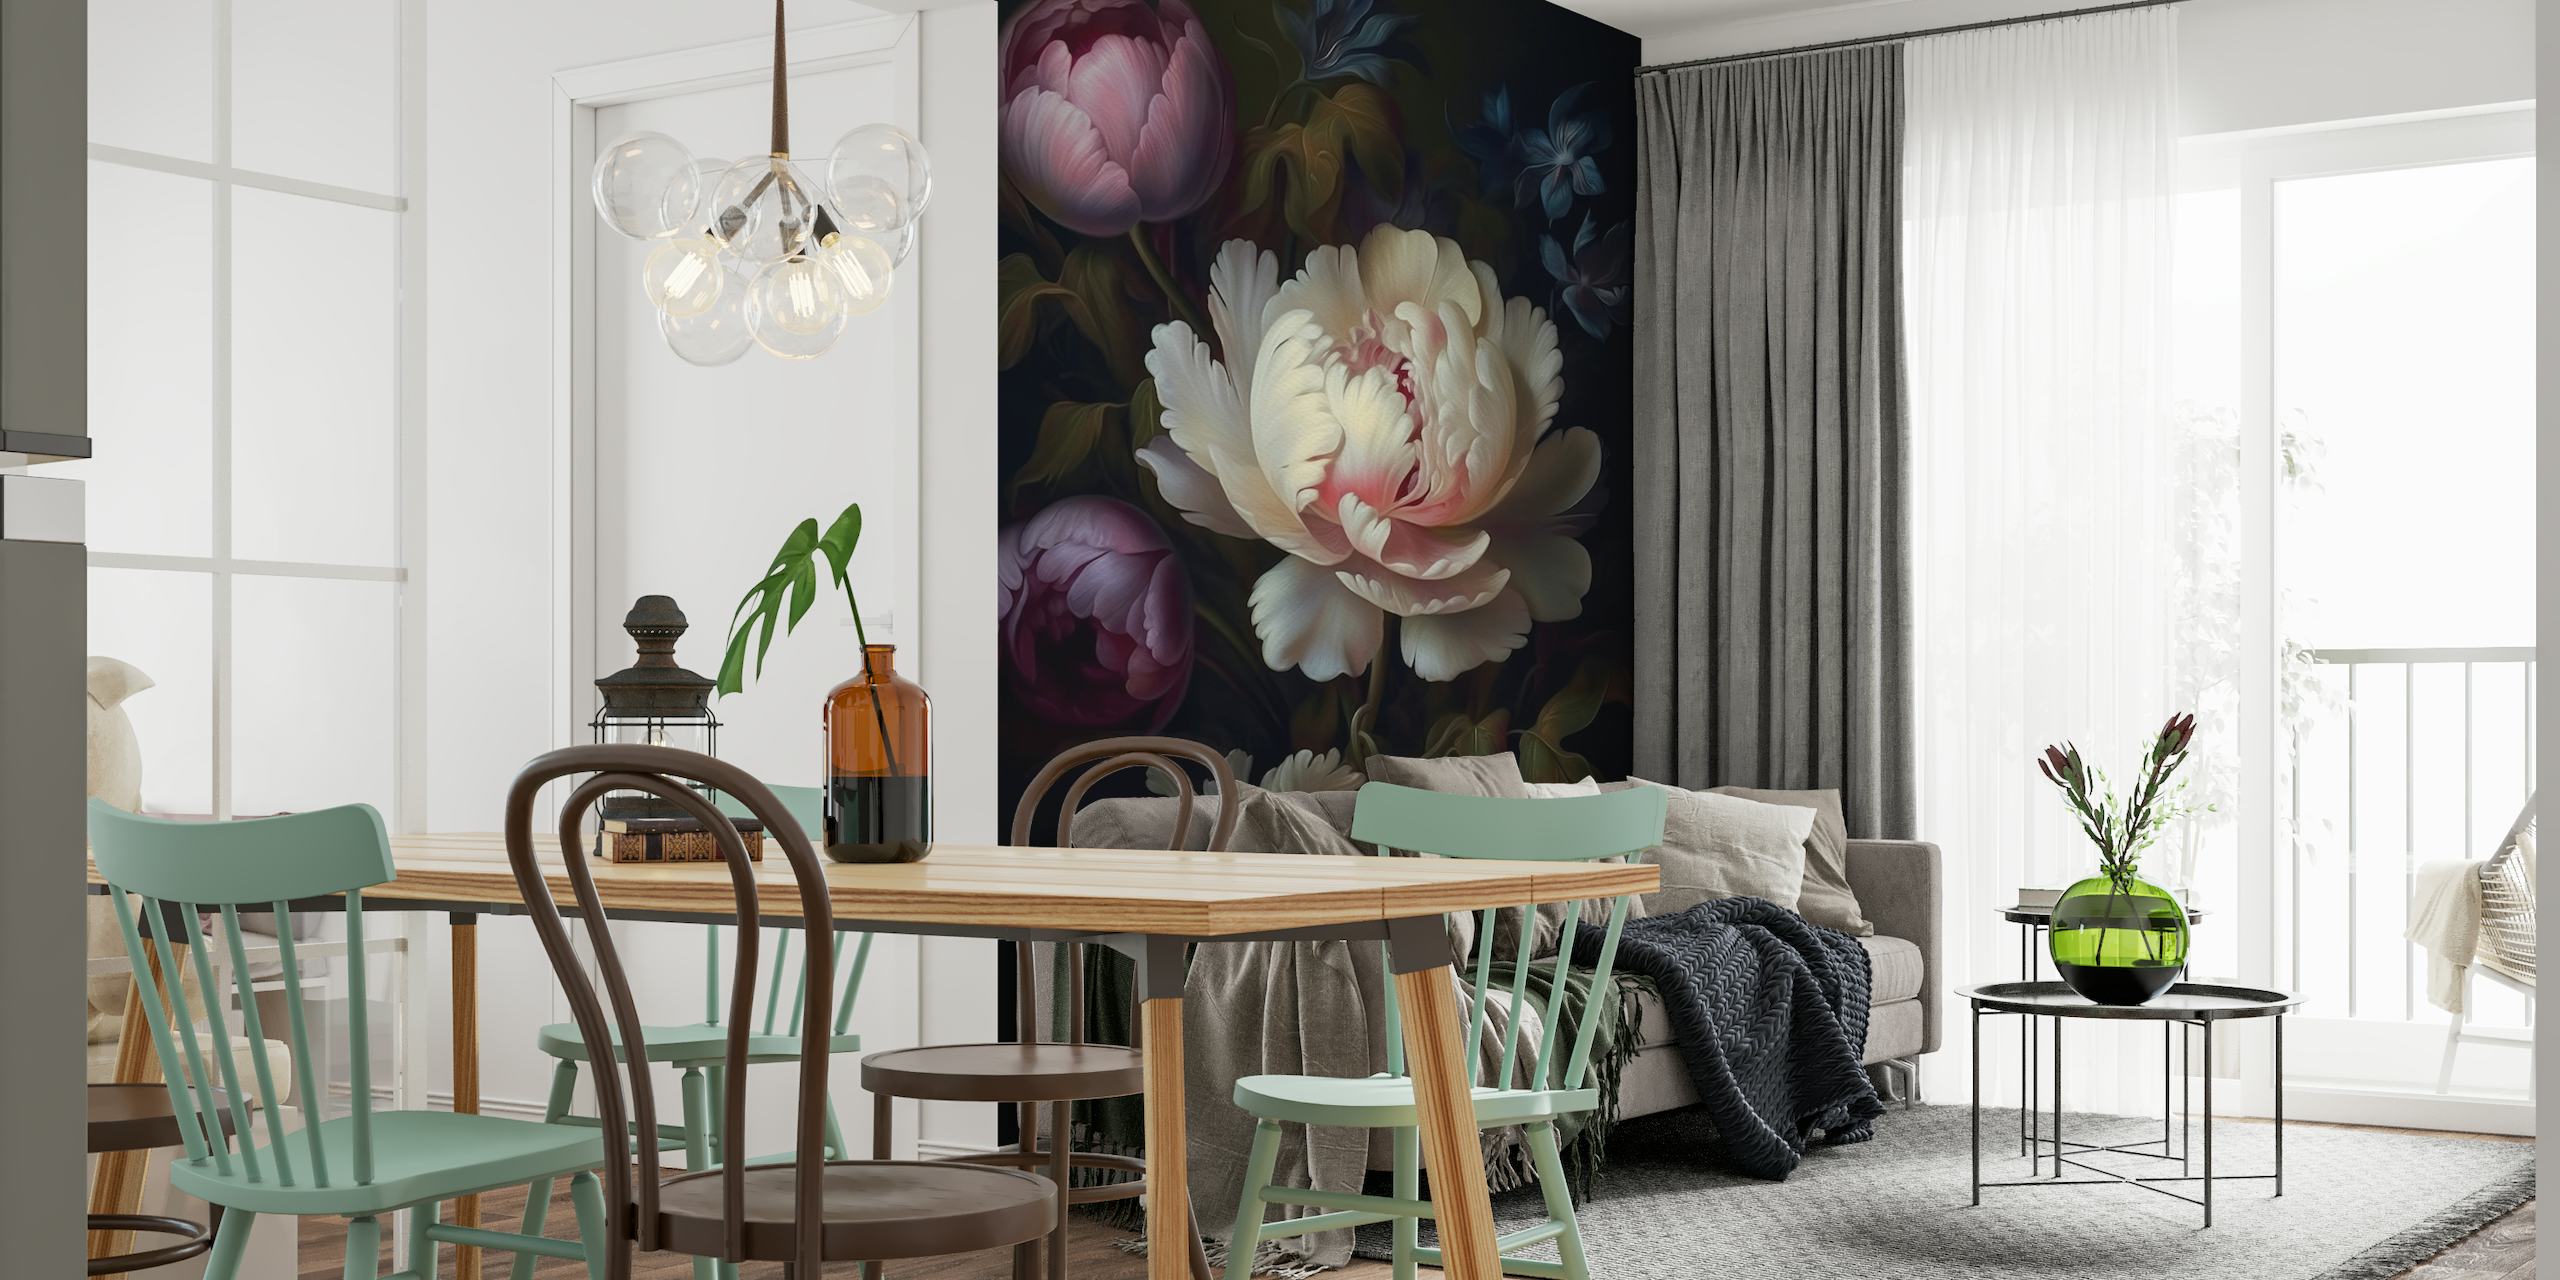 Donkere, bloemige muurschildering in barokstijl met weelderige pioenrozen tegen een stemmige nachtelijke achtergrond